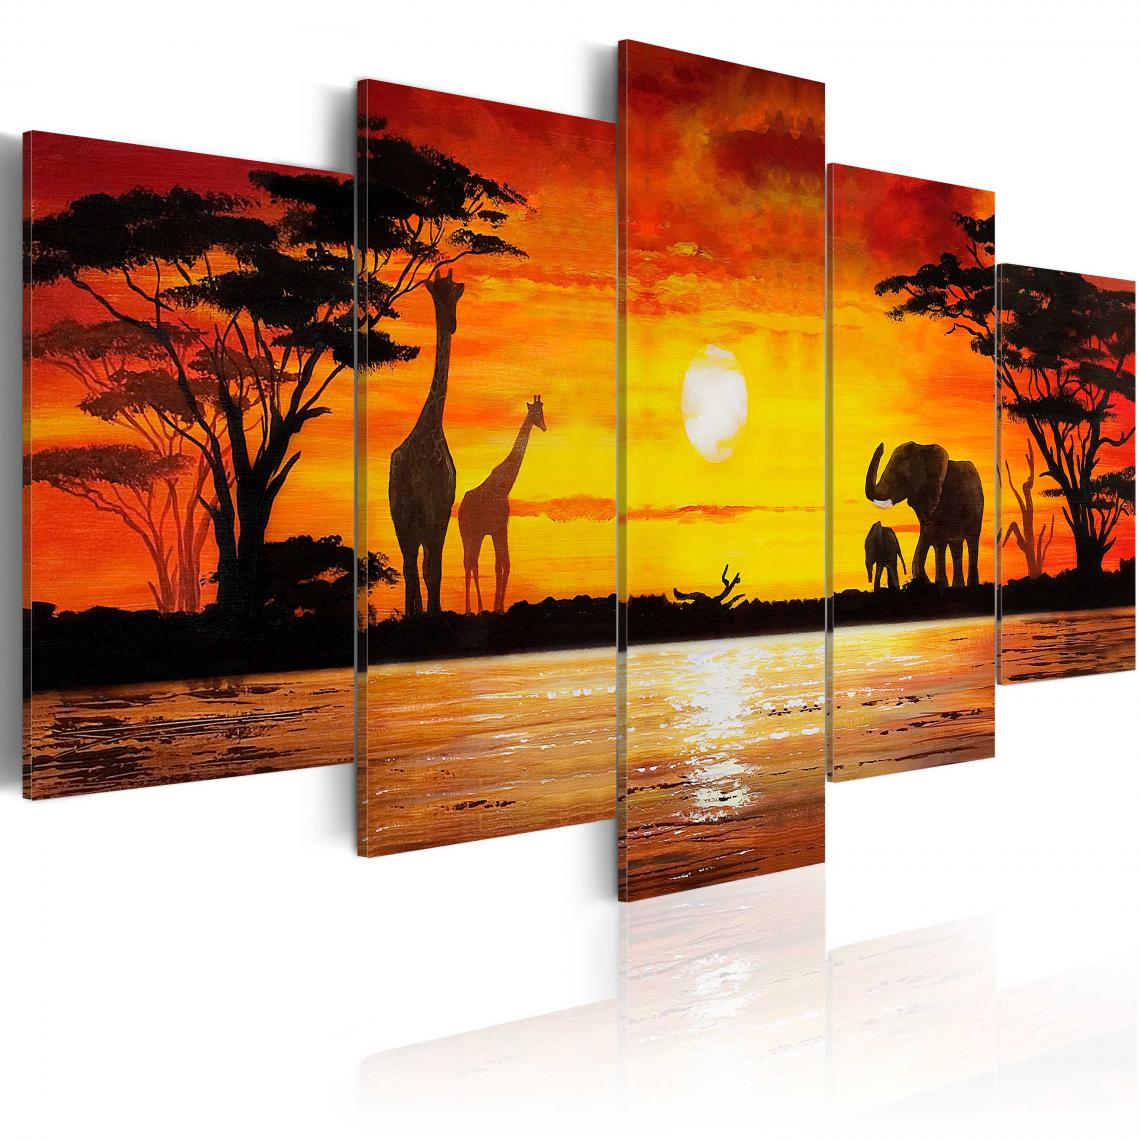 Decoshop26 - Tableau sur toile en 5 panneaux décoration murale image imprimée cadre en bois à suspendre Safari chaud 200x100 cm 11_0007696 - Tableaux, peintures